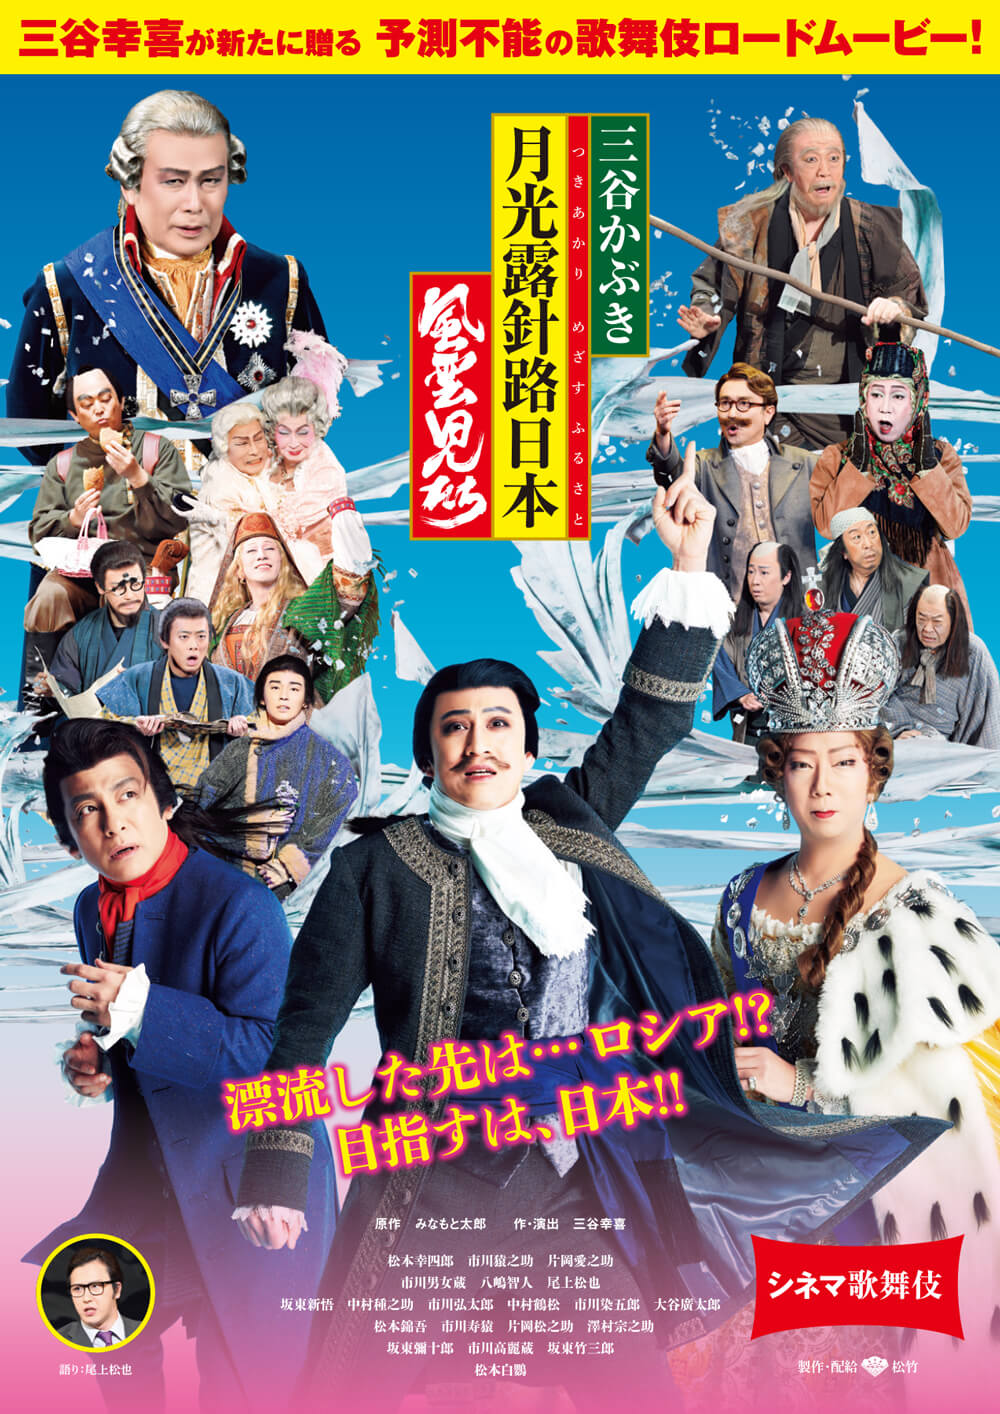 シネマ歌舞伎『三谷かぶき 月光露針路日本 風雲児たち』割引キャンペーンのお知らせ